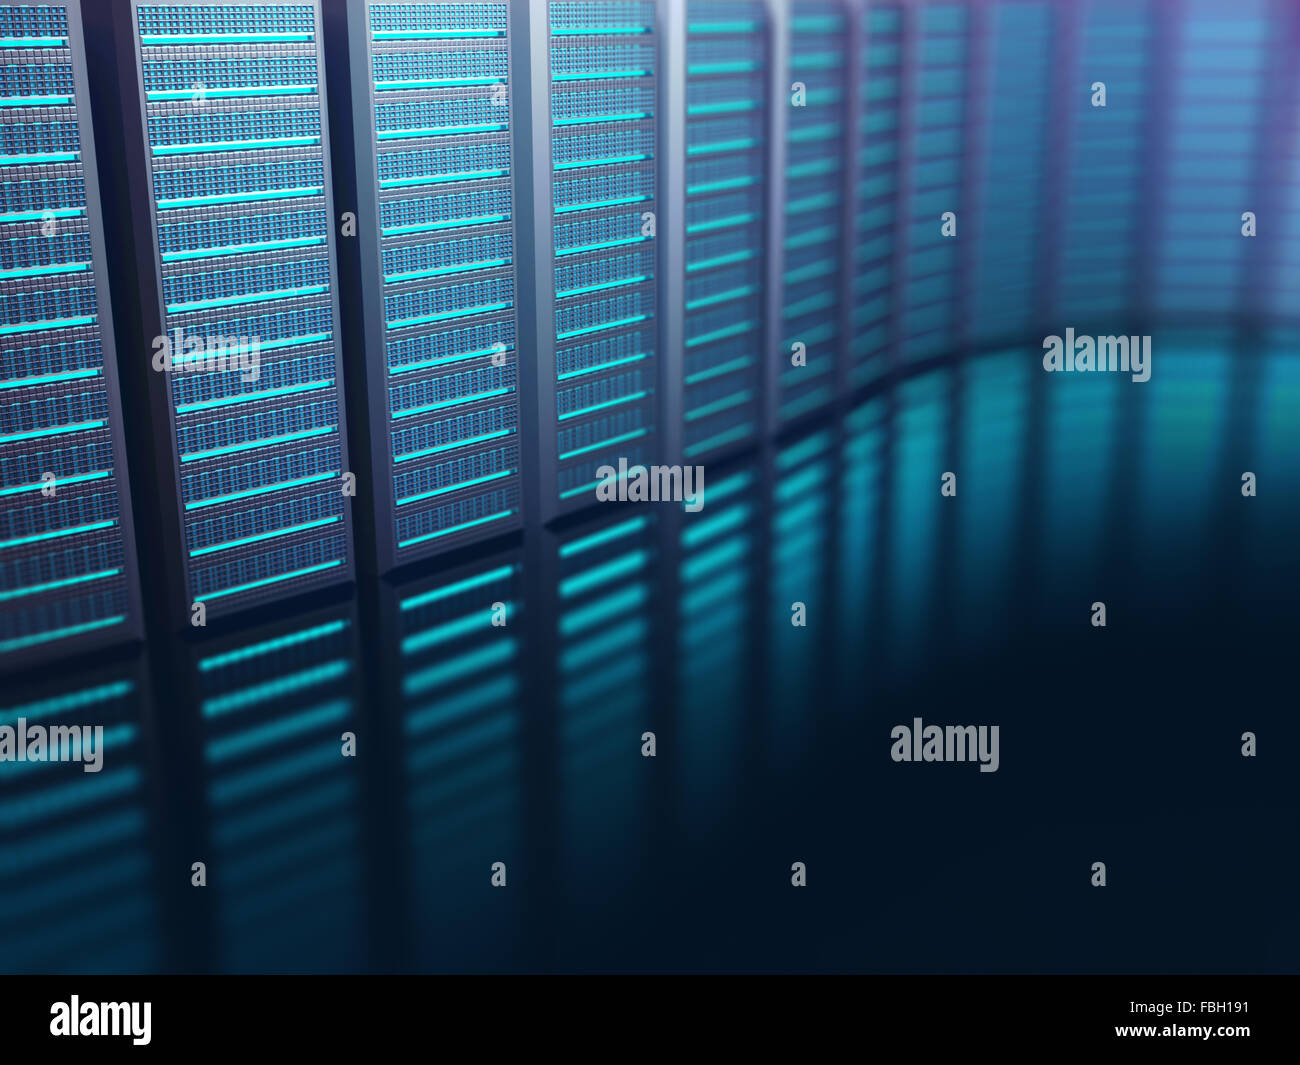 Server, aufgereiht auf einem abstrakten Hintergrund. Abstraktes Bild auf Technologie-Konzept. Stockfoto